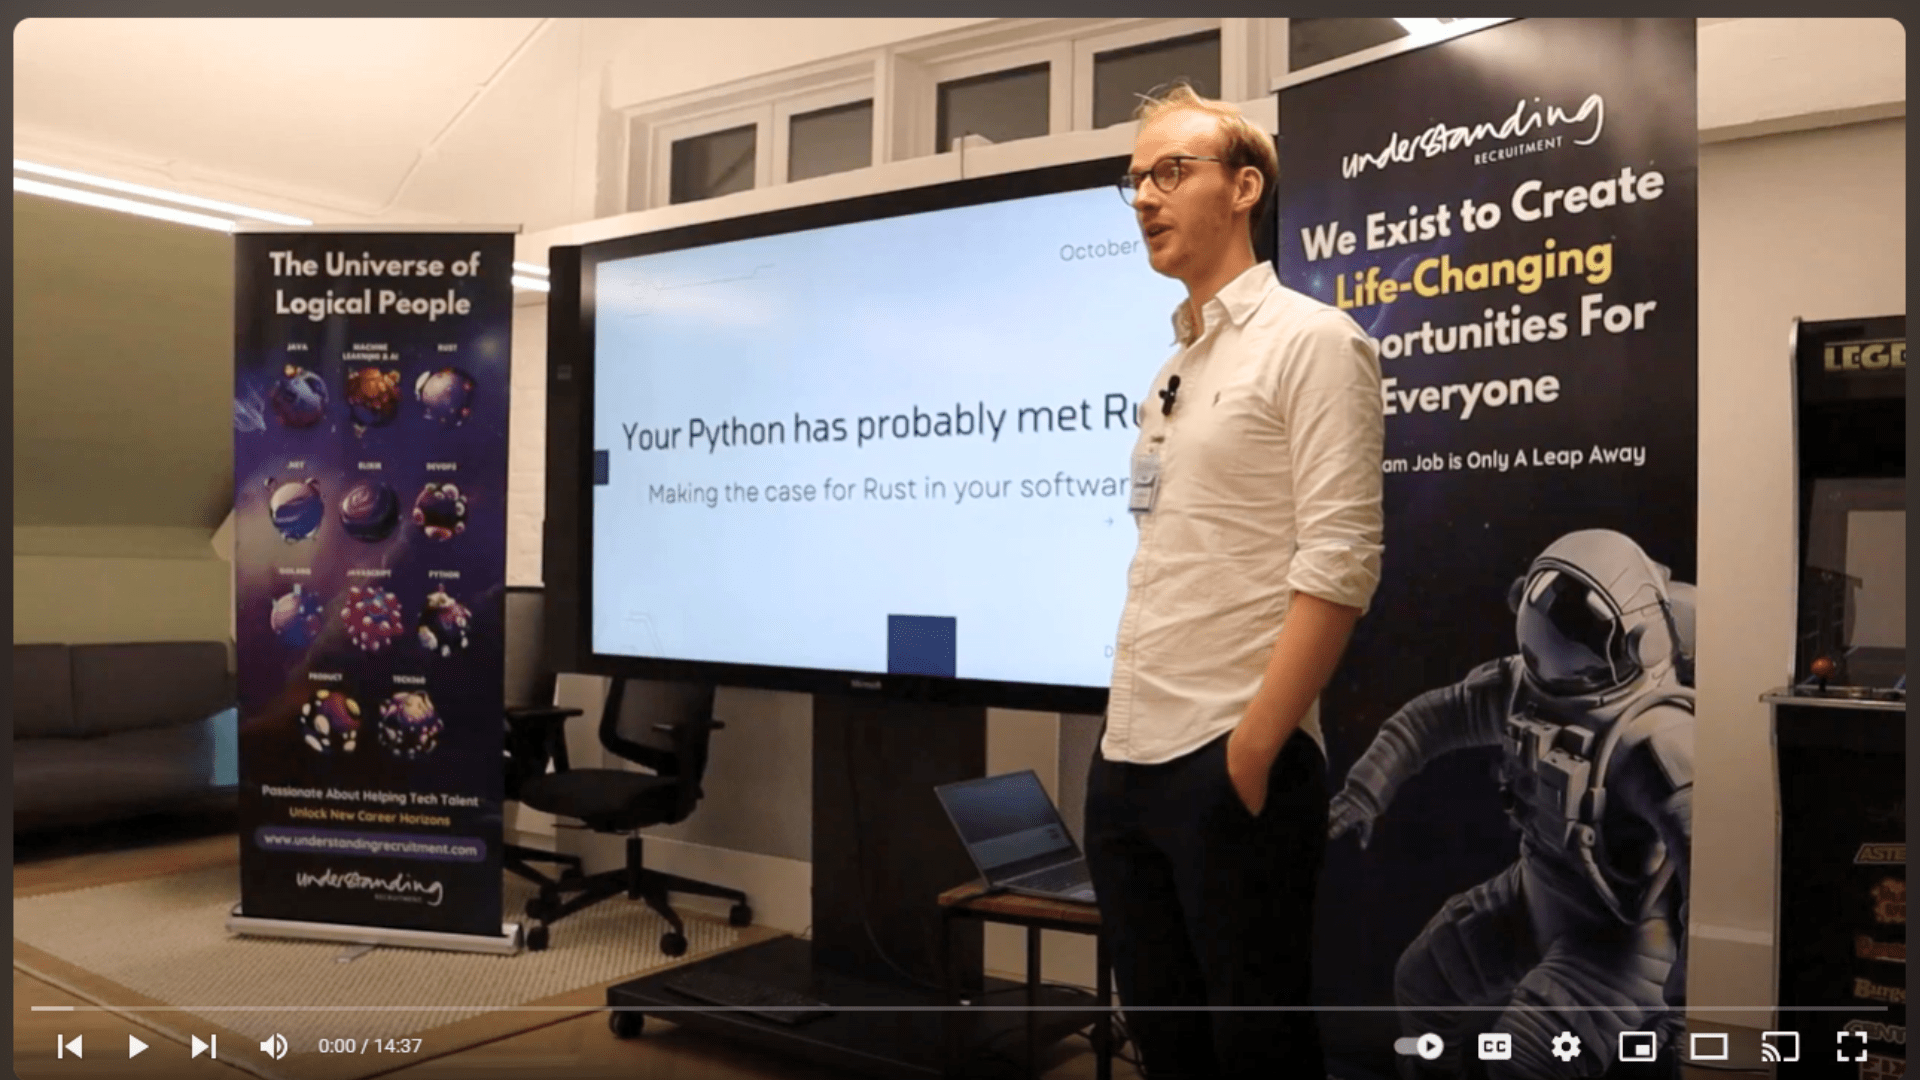 David Hewitt: (Pydantic): Your Python has probably met Rust